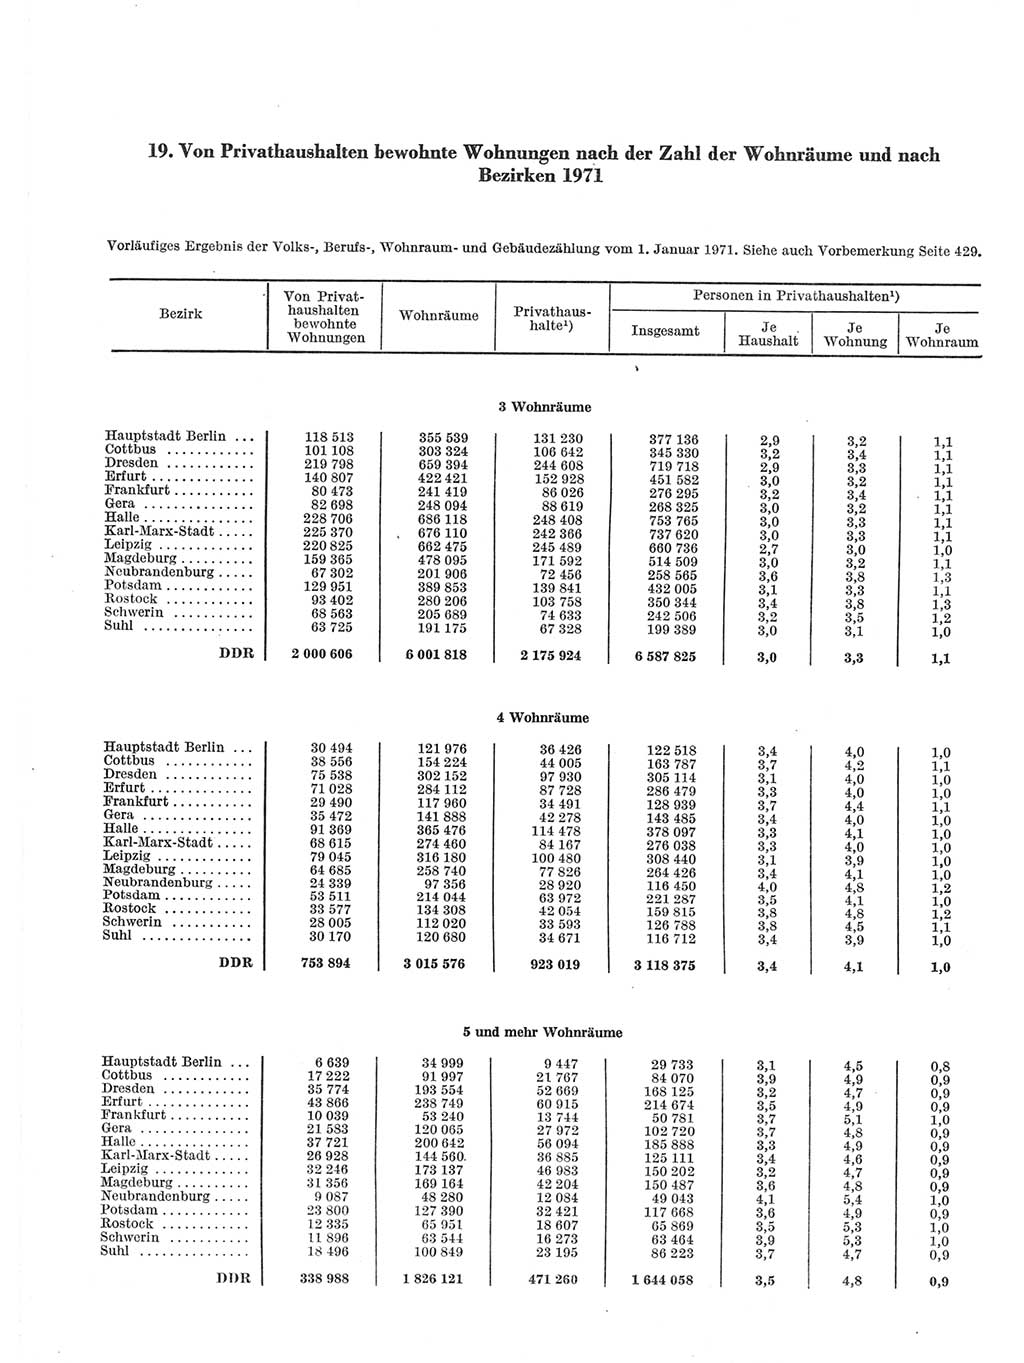 Statistisches Jahrbuch der Deutschen Demokratischen Republik (DDR) 1971, Seite 356 (Stat. Jb. DDR 1971, S. 356)